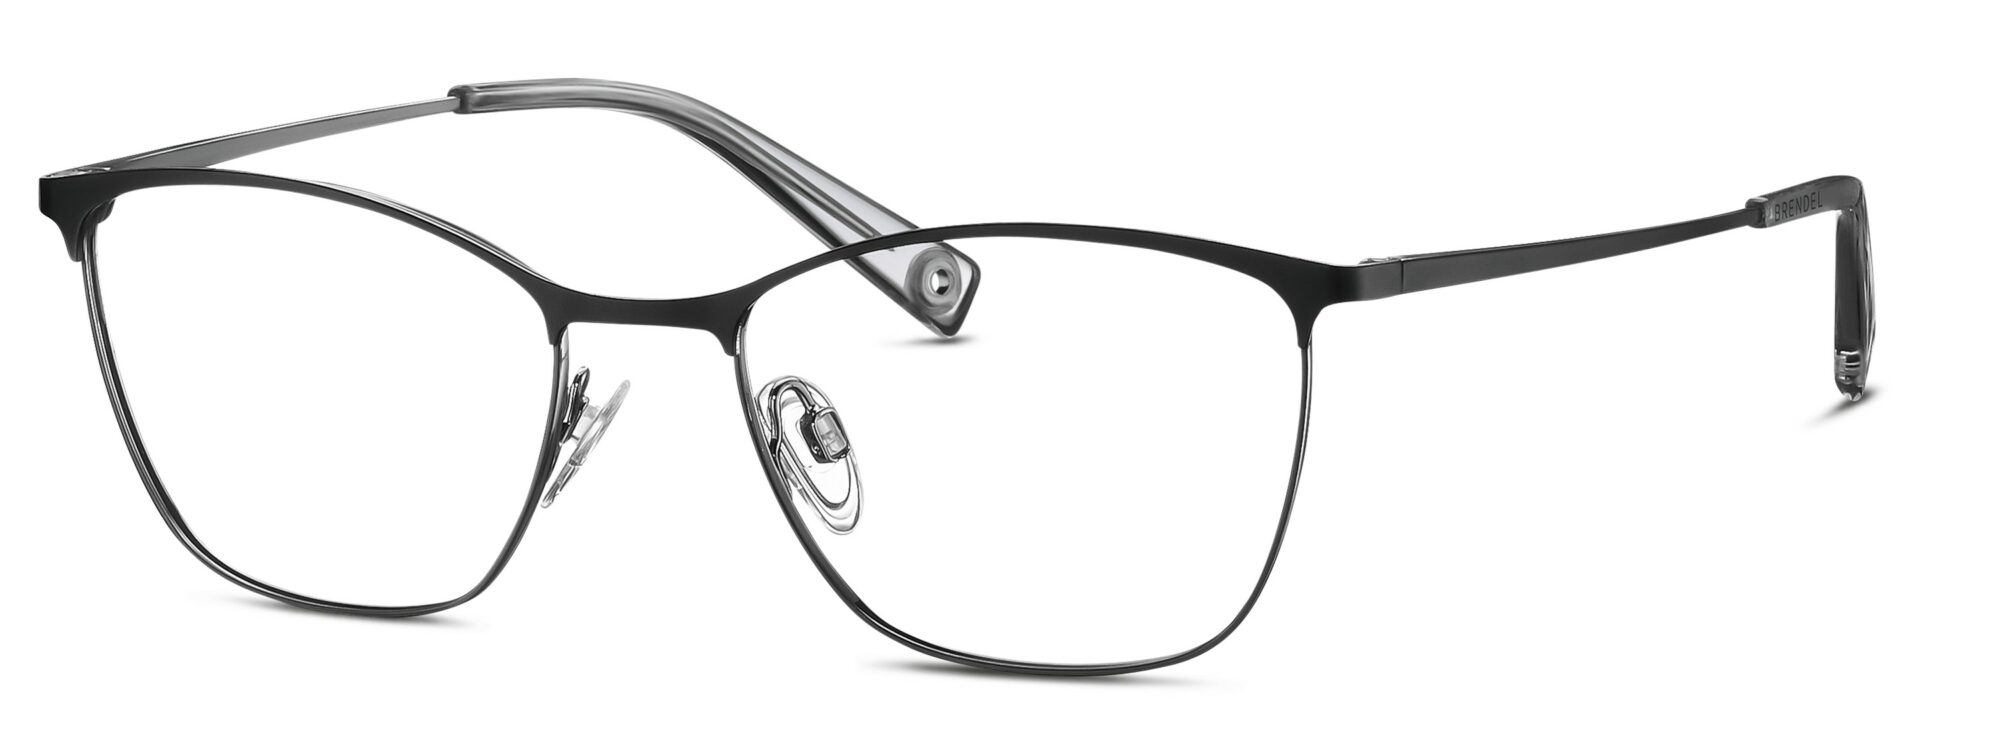 BRENDEL eyewear - 902355-10